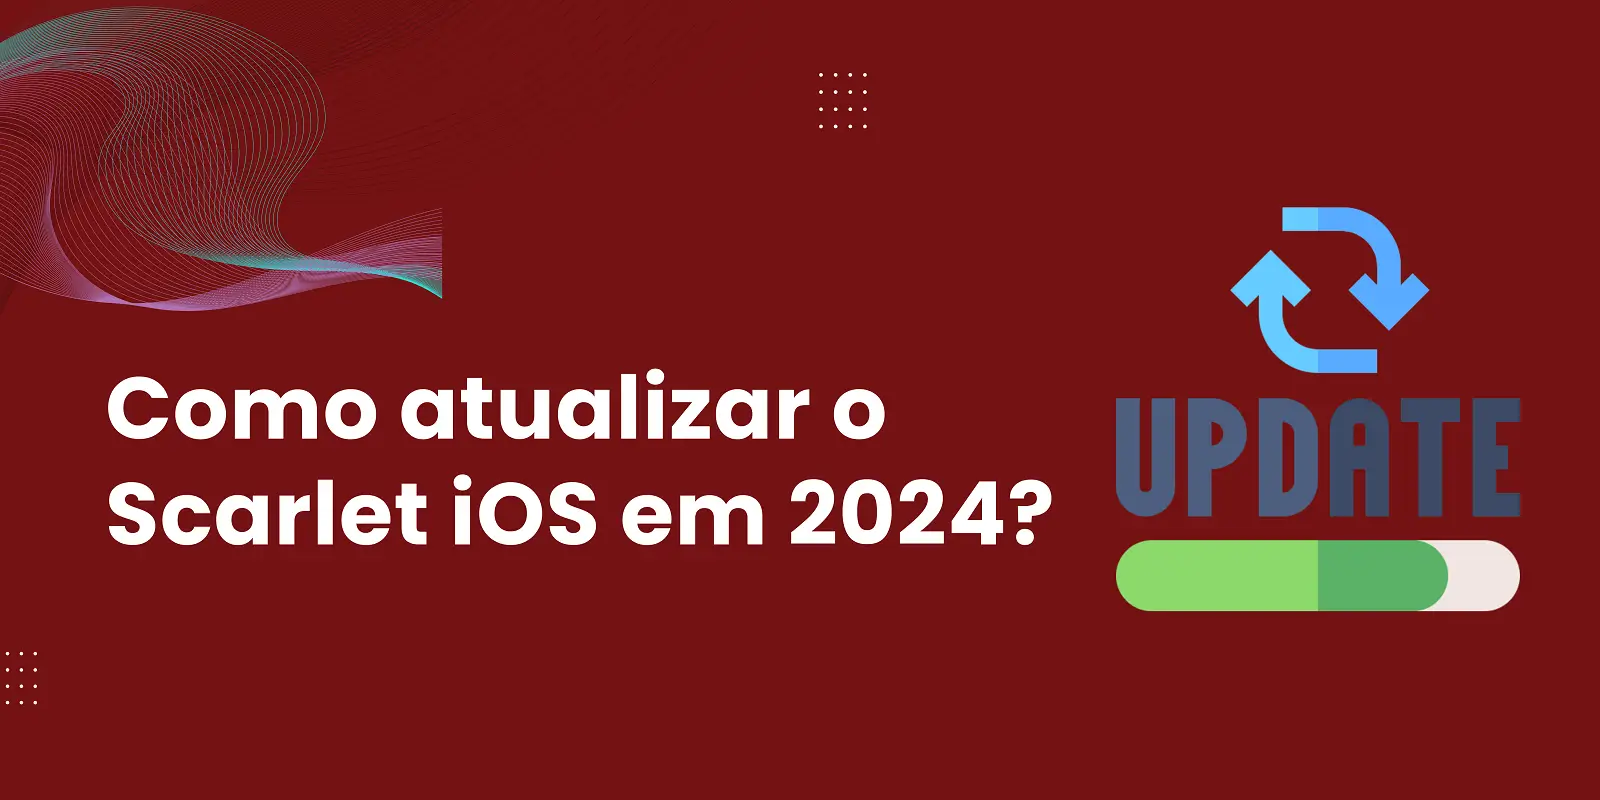 Como atualizar o Scarlet iOS em 2024?